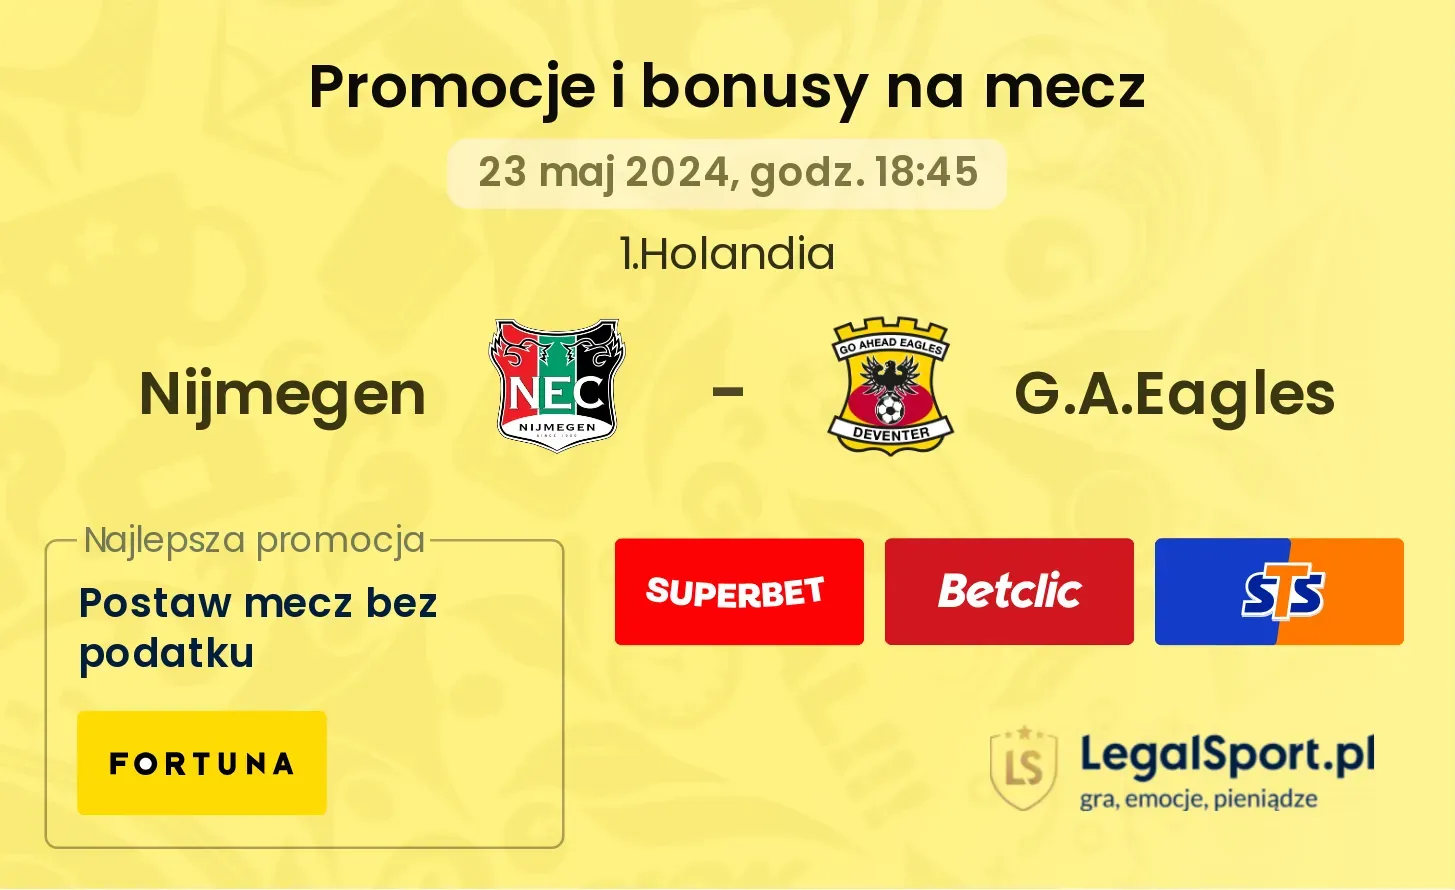 Nijmegen - G.A.Eagles promocje bonusy na mecz